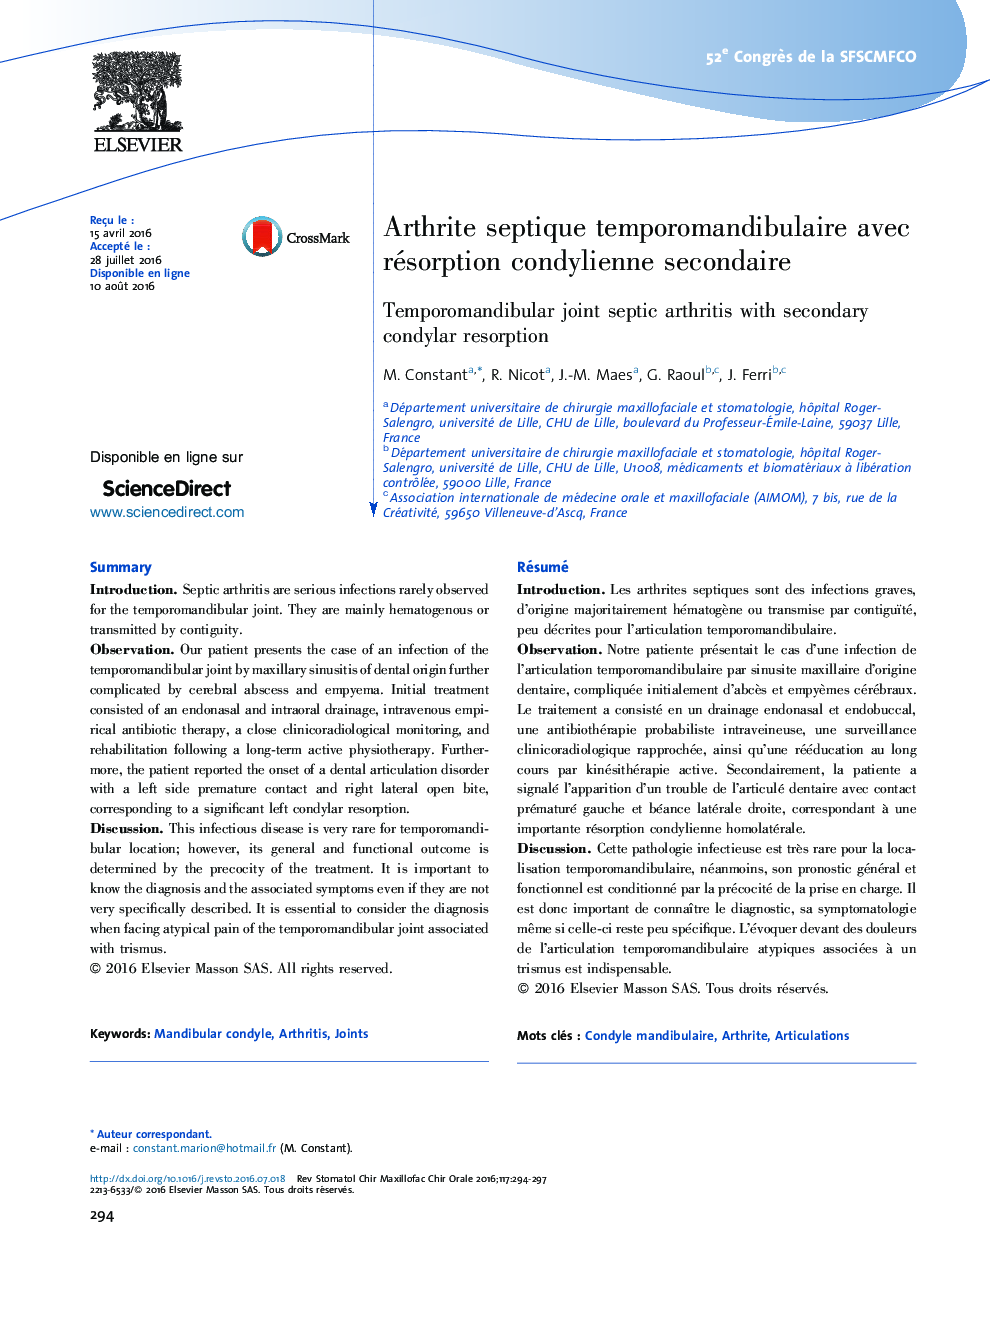 Arthrite septique temporomandibulaire avec résorption condylienne secondaire